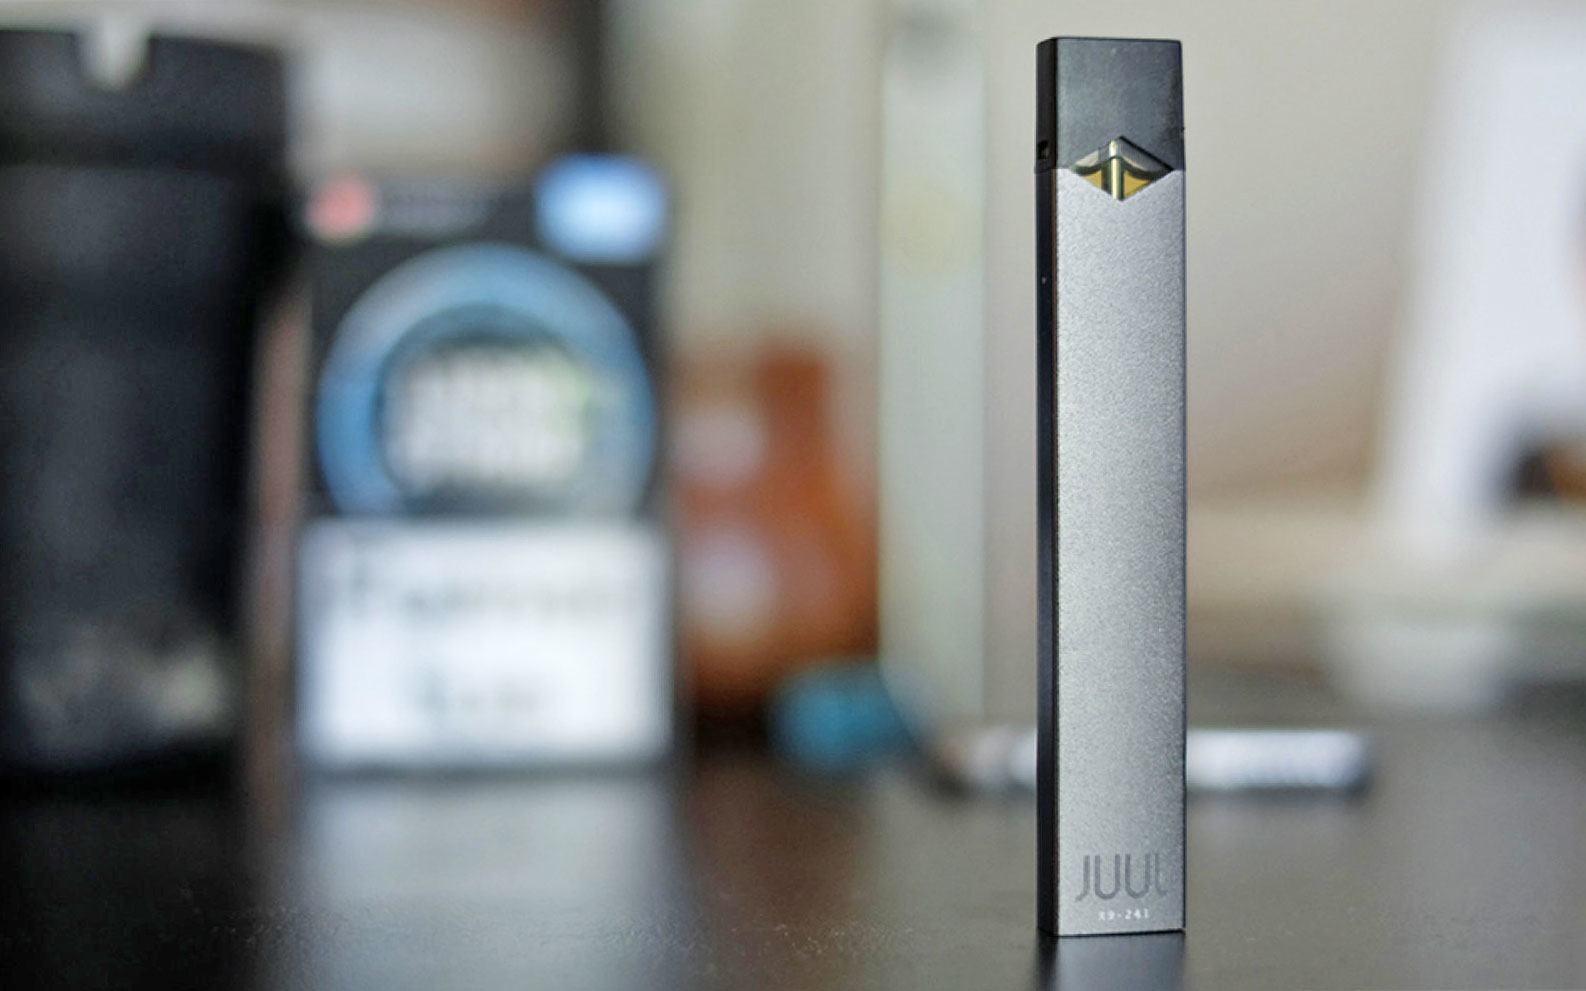 Juul – L’e-cigarette lève 1,2 milliard de dollars pour conquérir le monde